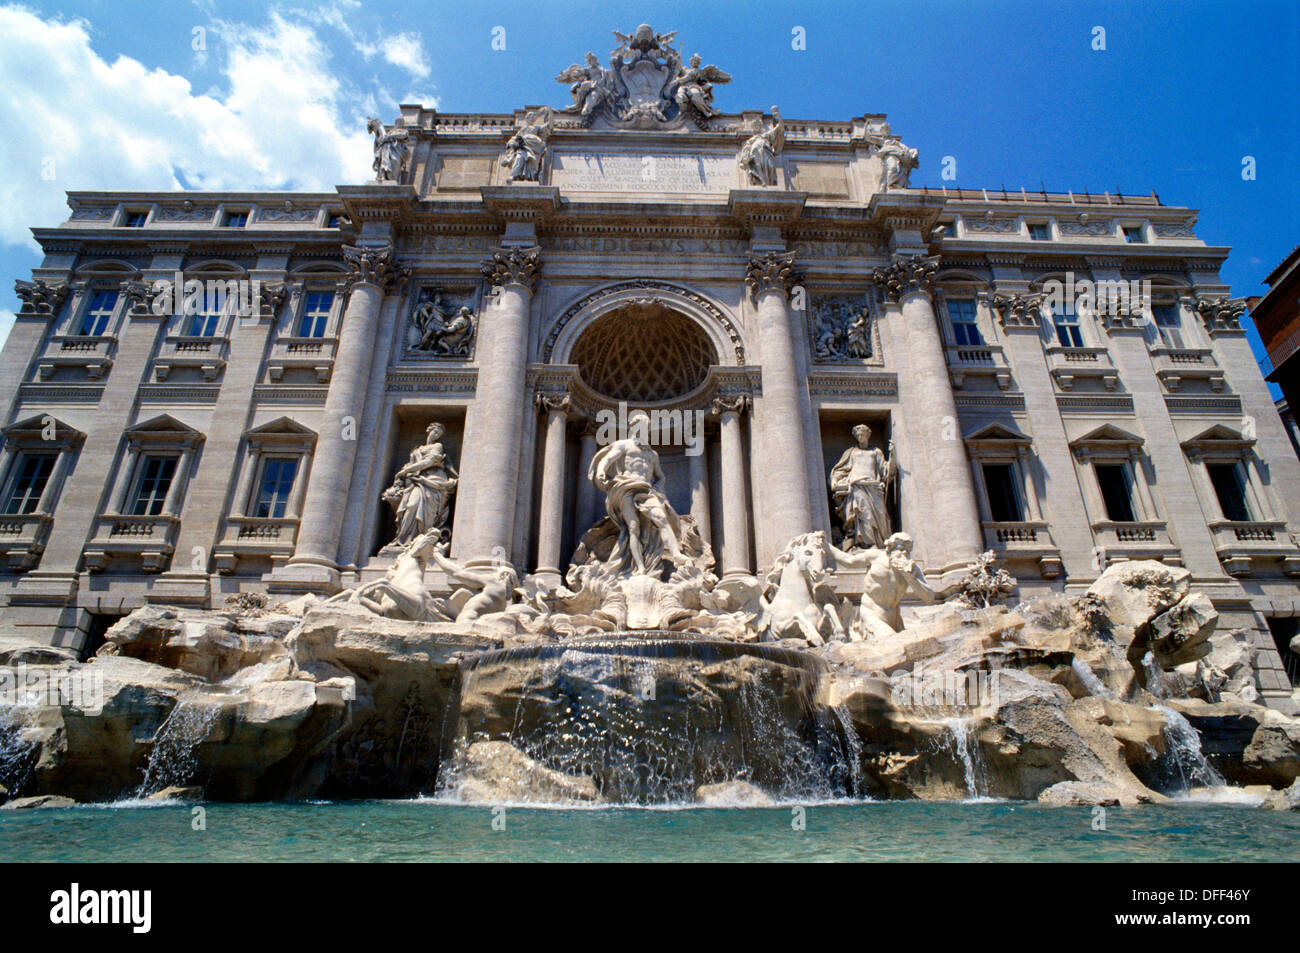 Fontaine de Trevi, l'architecte Nicola Salvi. Rome. Italie Banque D'Images